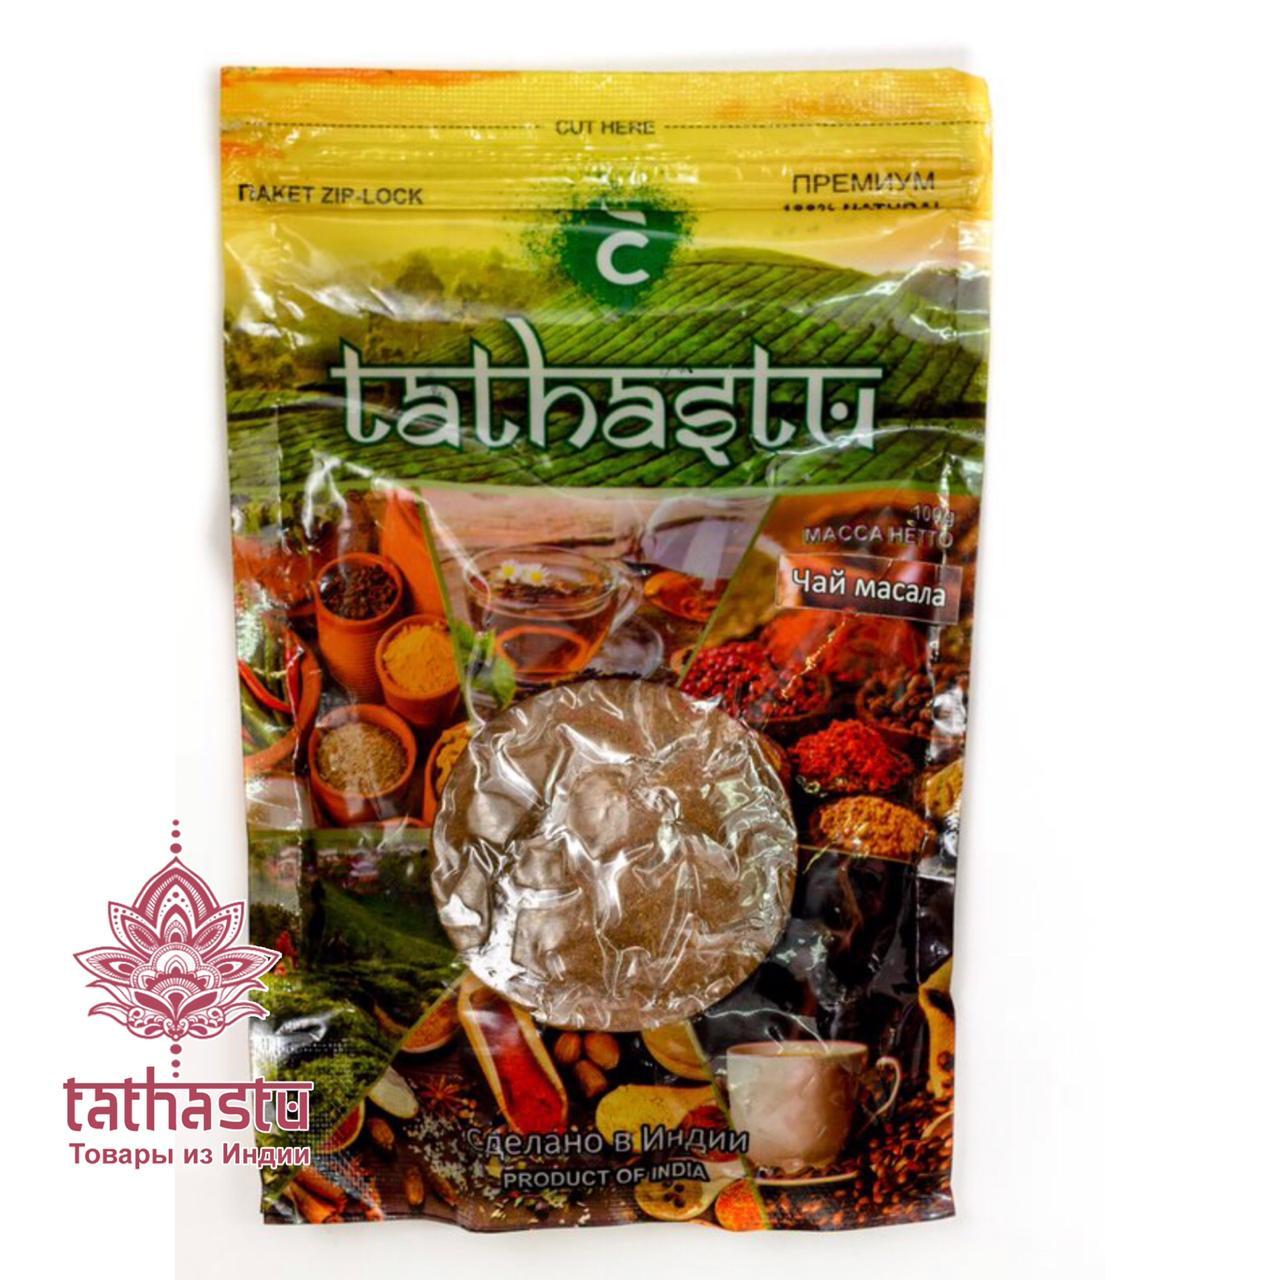 Специи tathastu Tea Masala. Tathastu товары и индии